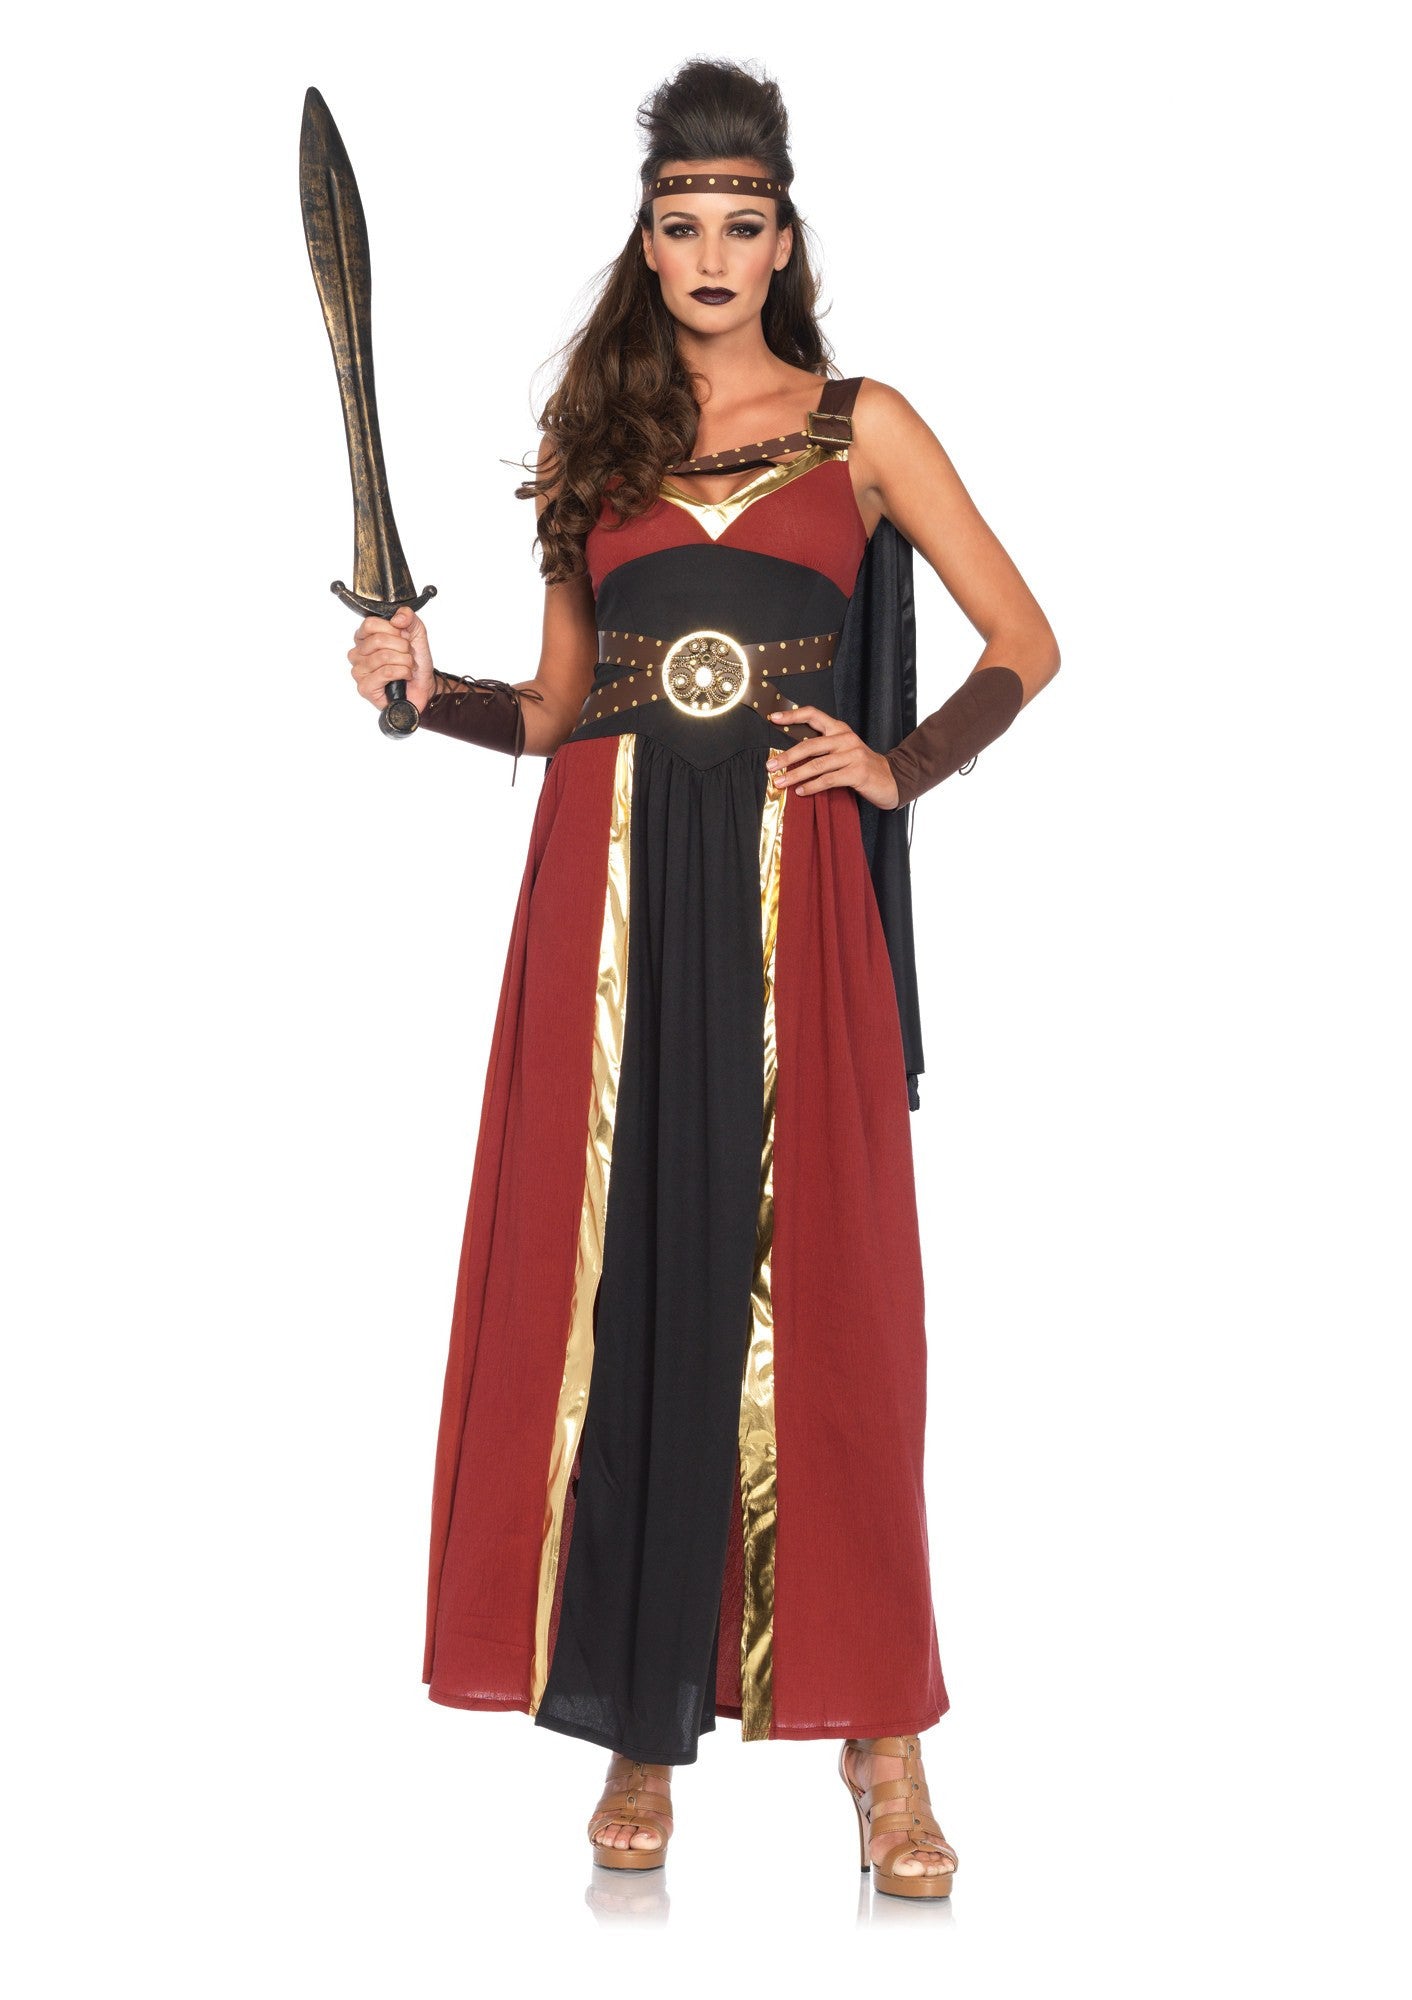 Costume - Regal Warrior Costume